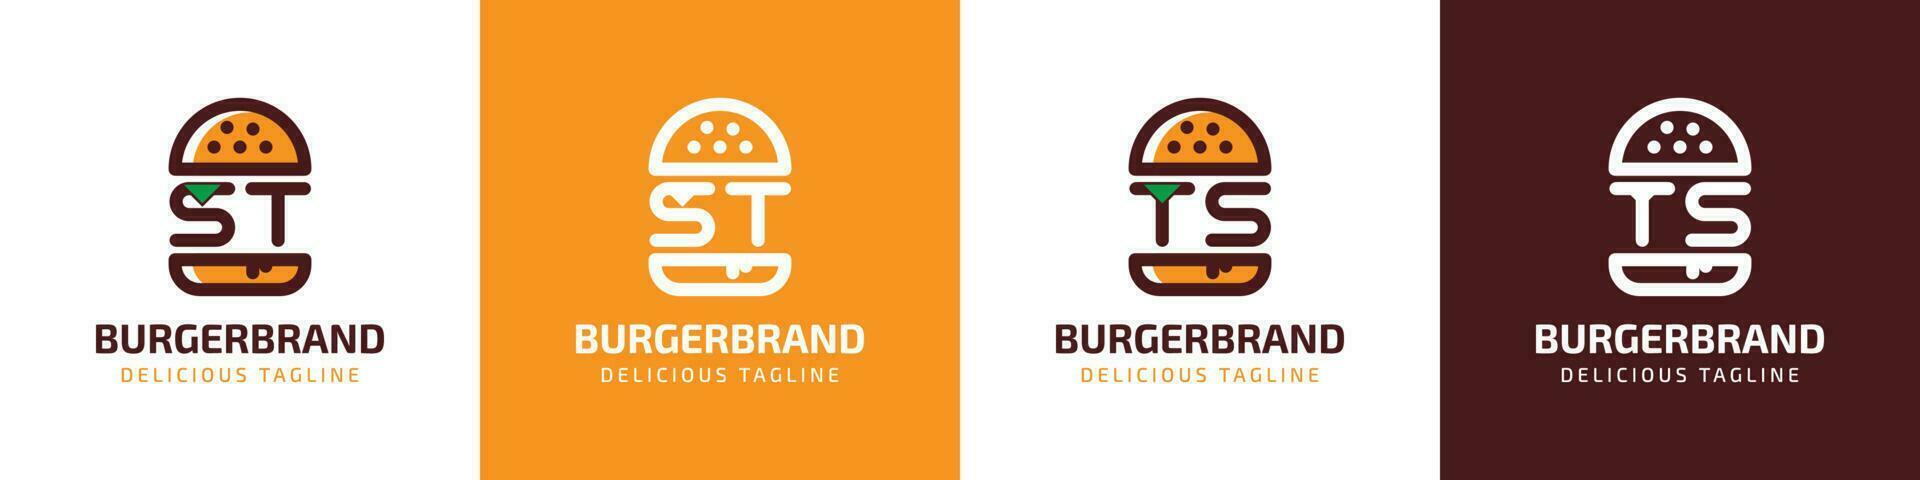 letra S t y ts hamburguesa logo, adecuado para ninguna negocio relacionado a hamburguesa con S t o ts iniciales. vector